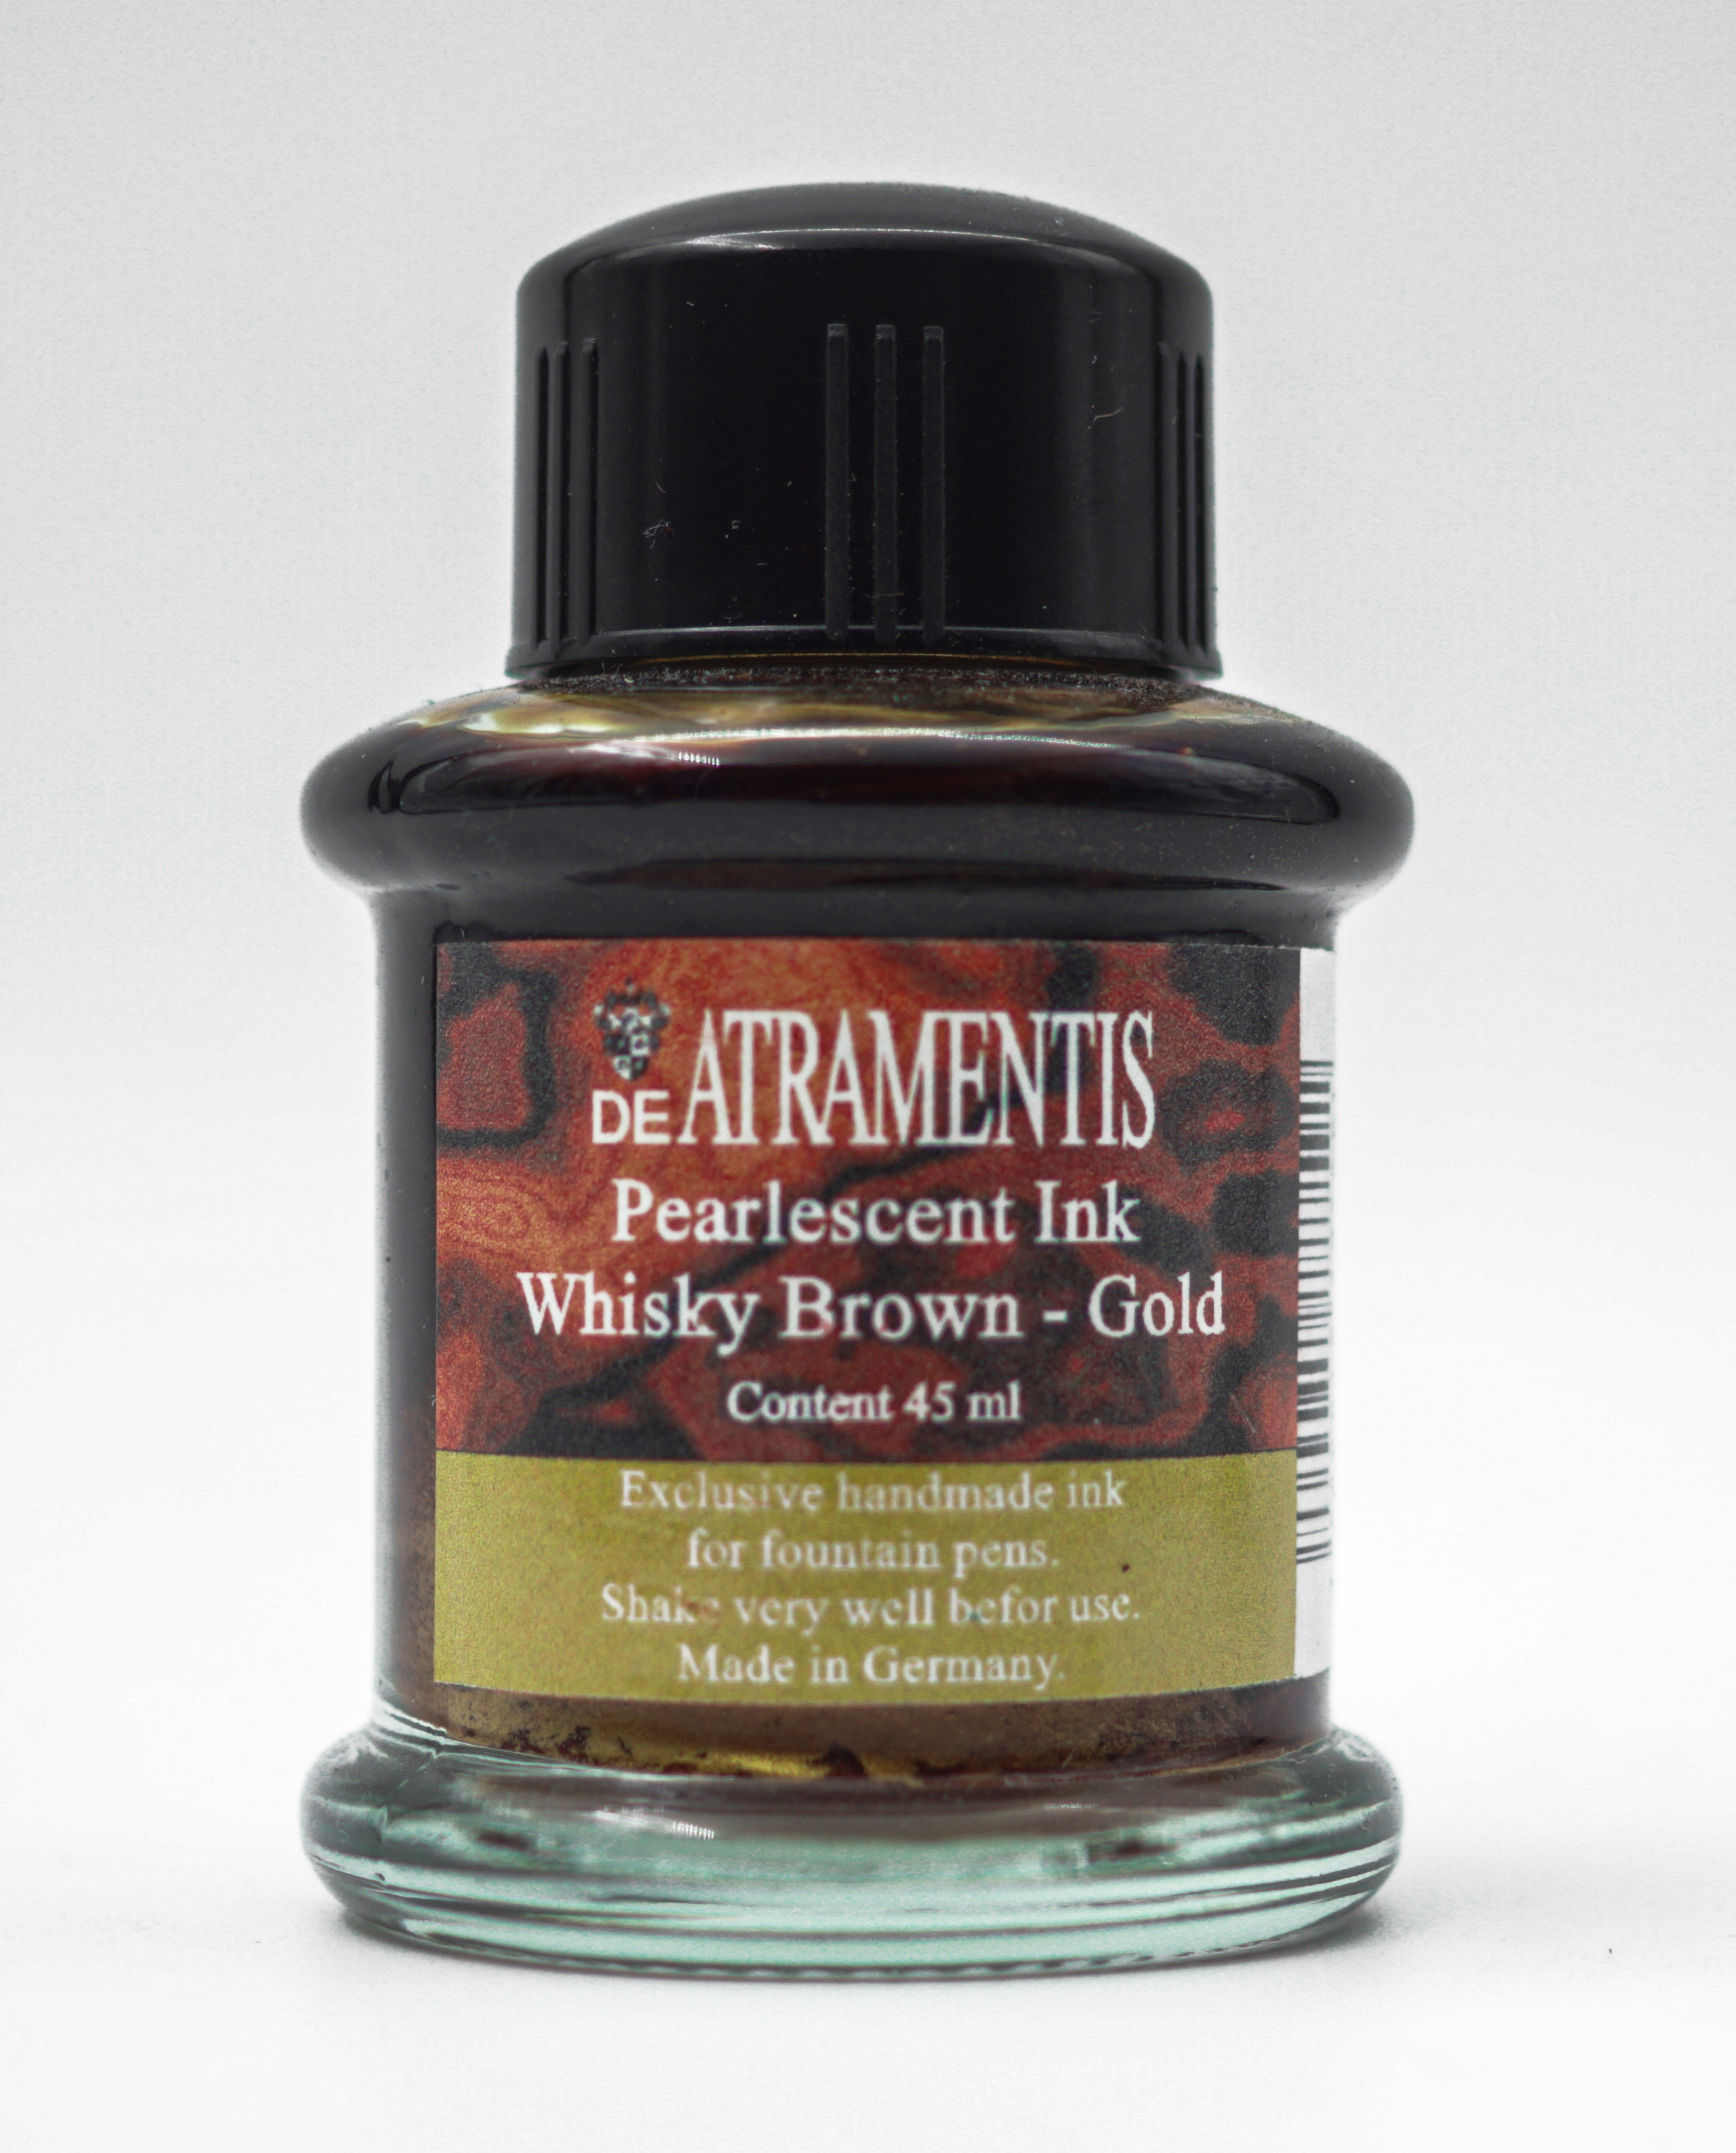 DE ATRAMENTIS Pearlescent Ink Whisky Brown Gold Ink Bottle 45ml SKU 70878